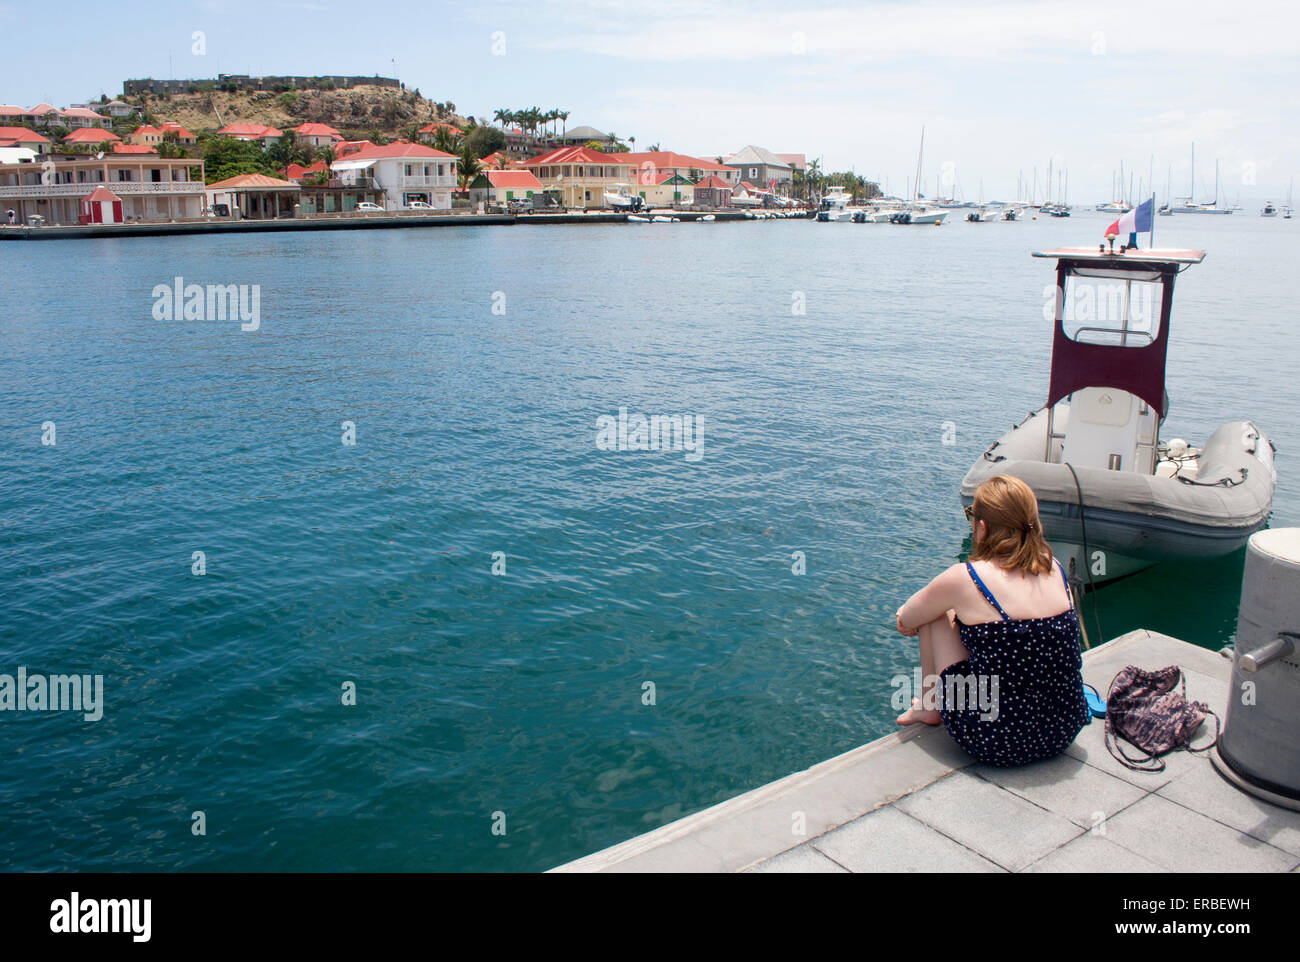 Une jeune femme bénéficie d'une vue sur le port de Gustavia, Saint Barth Banque D'Images